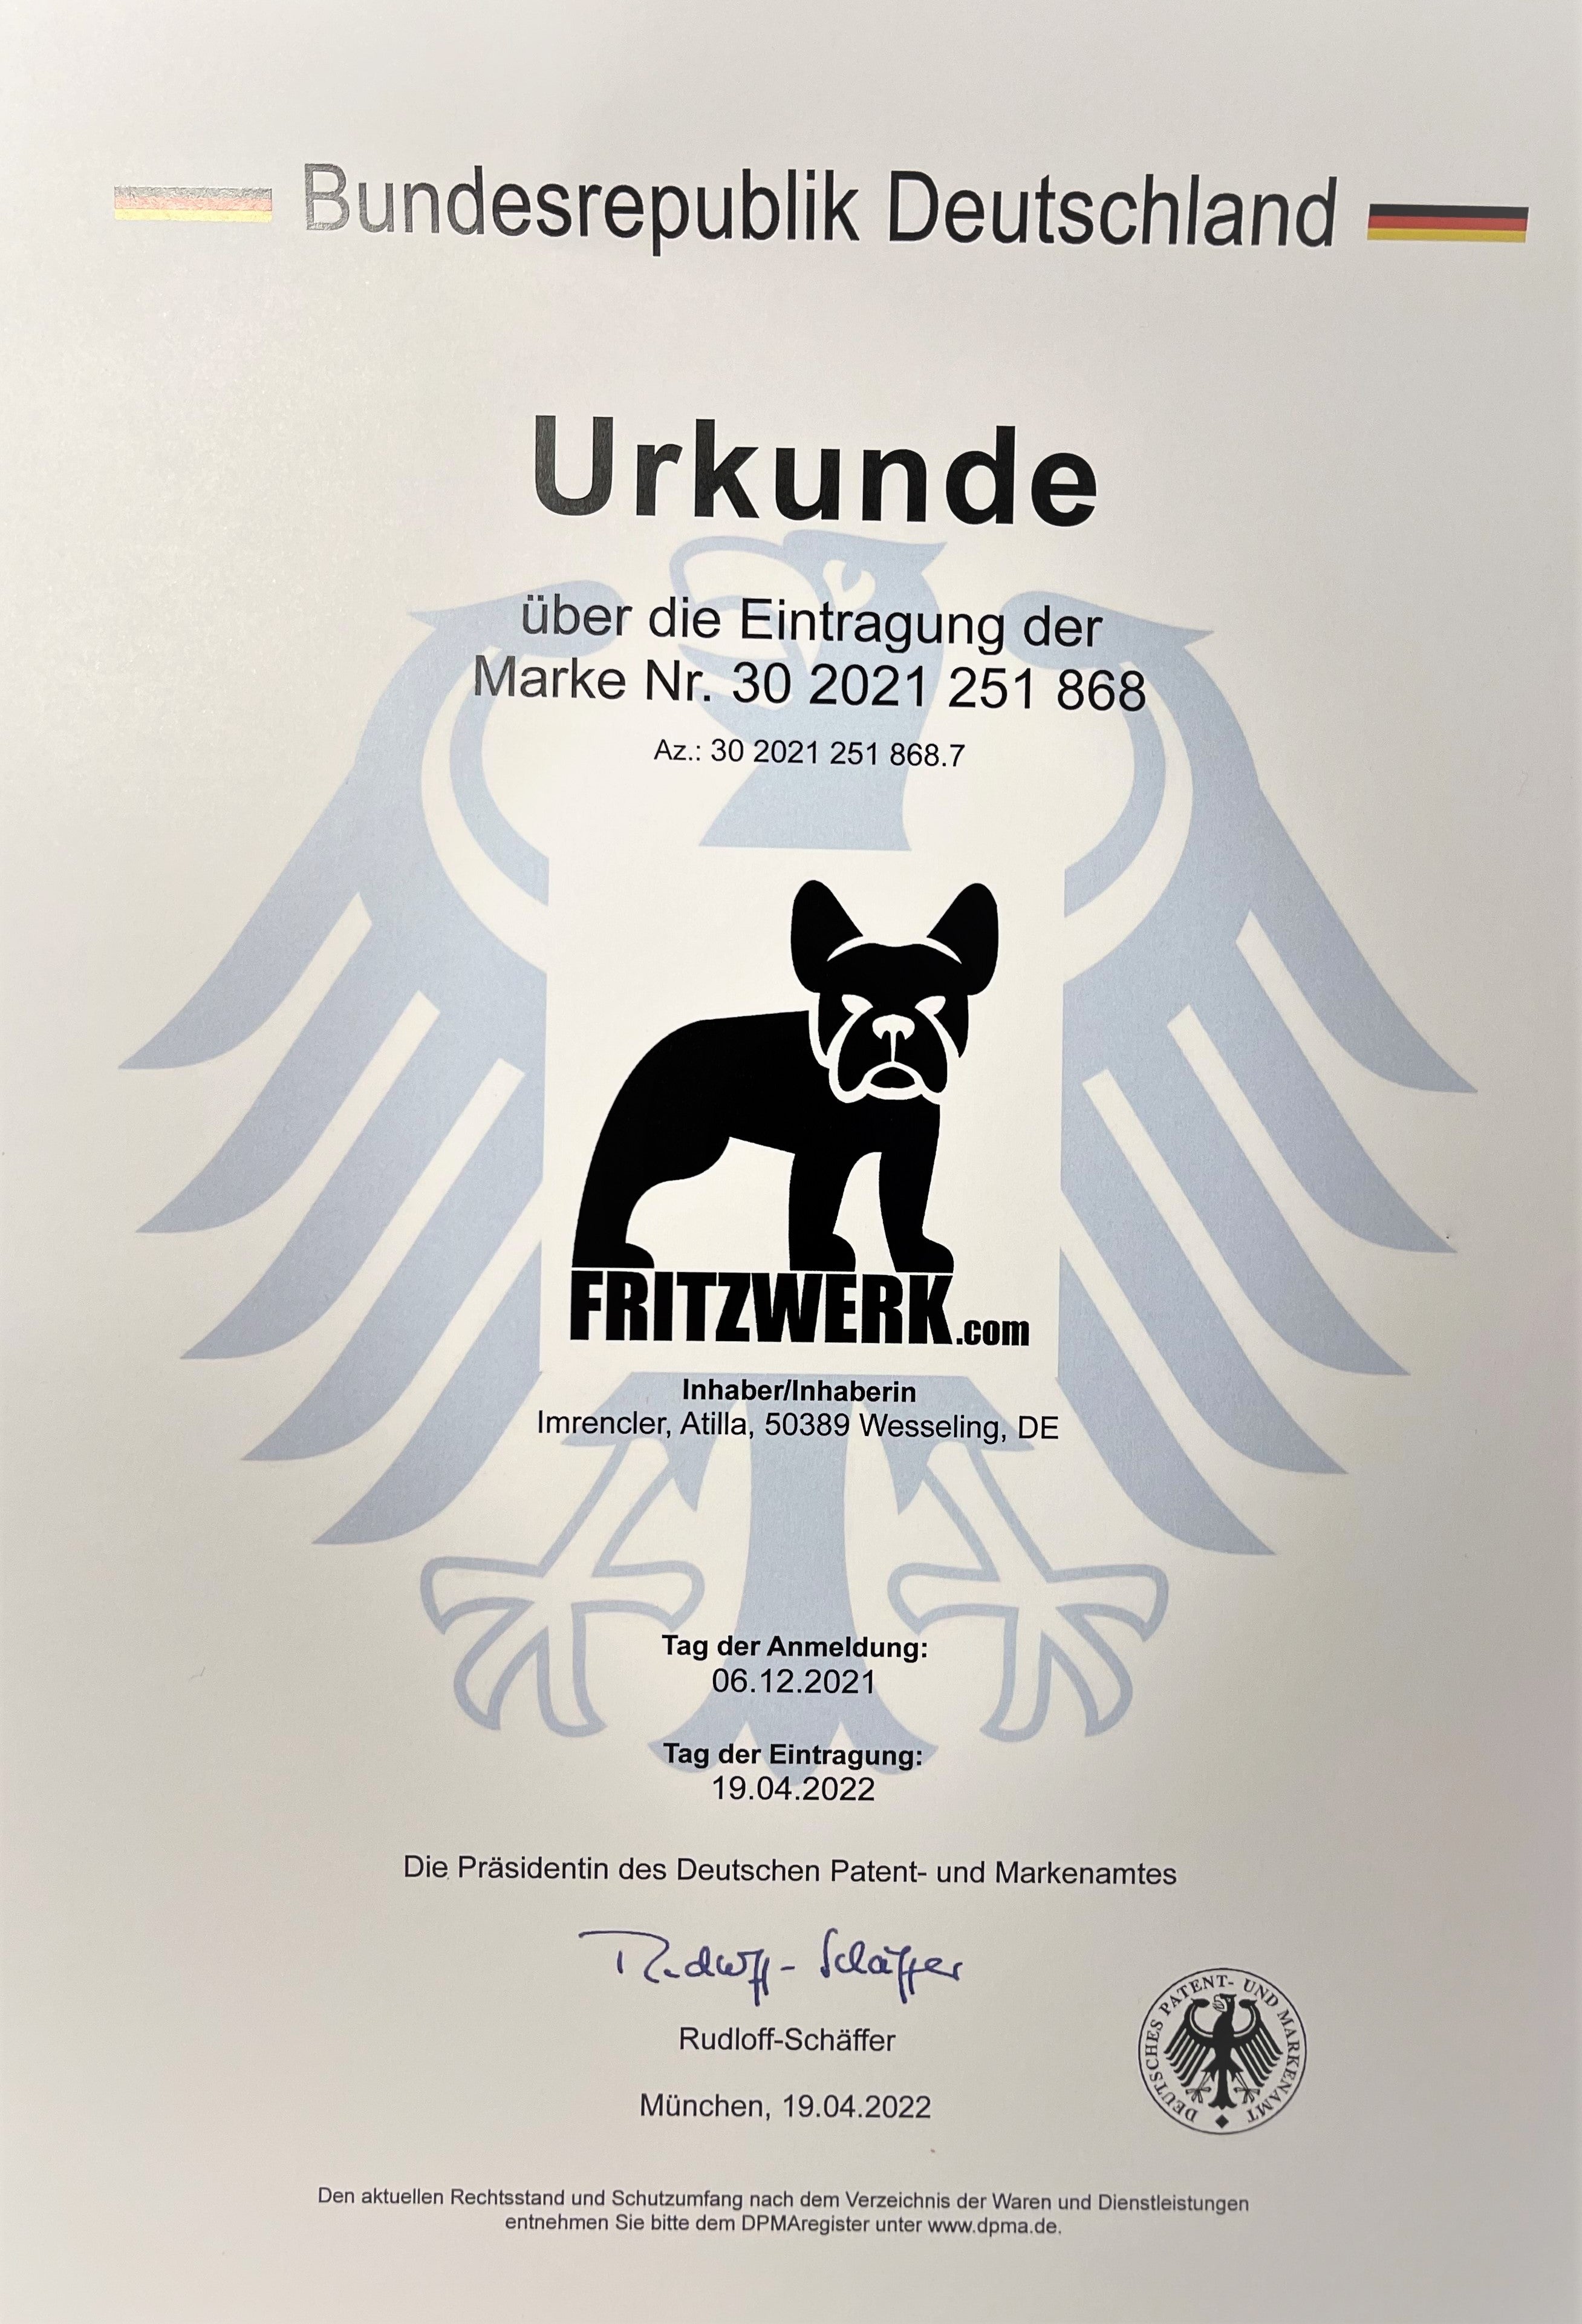 FRITZWERK Slim Fritz - Premium Business Wallet Echtleder dunkel Braun Cardholder Portmonee Geldbörse Kreditkartenetui A++